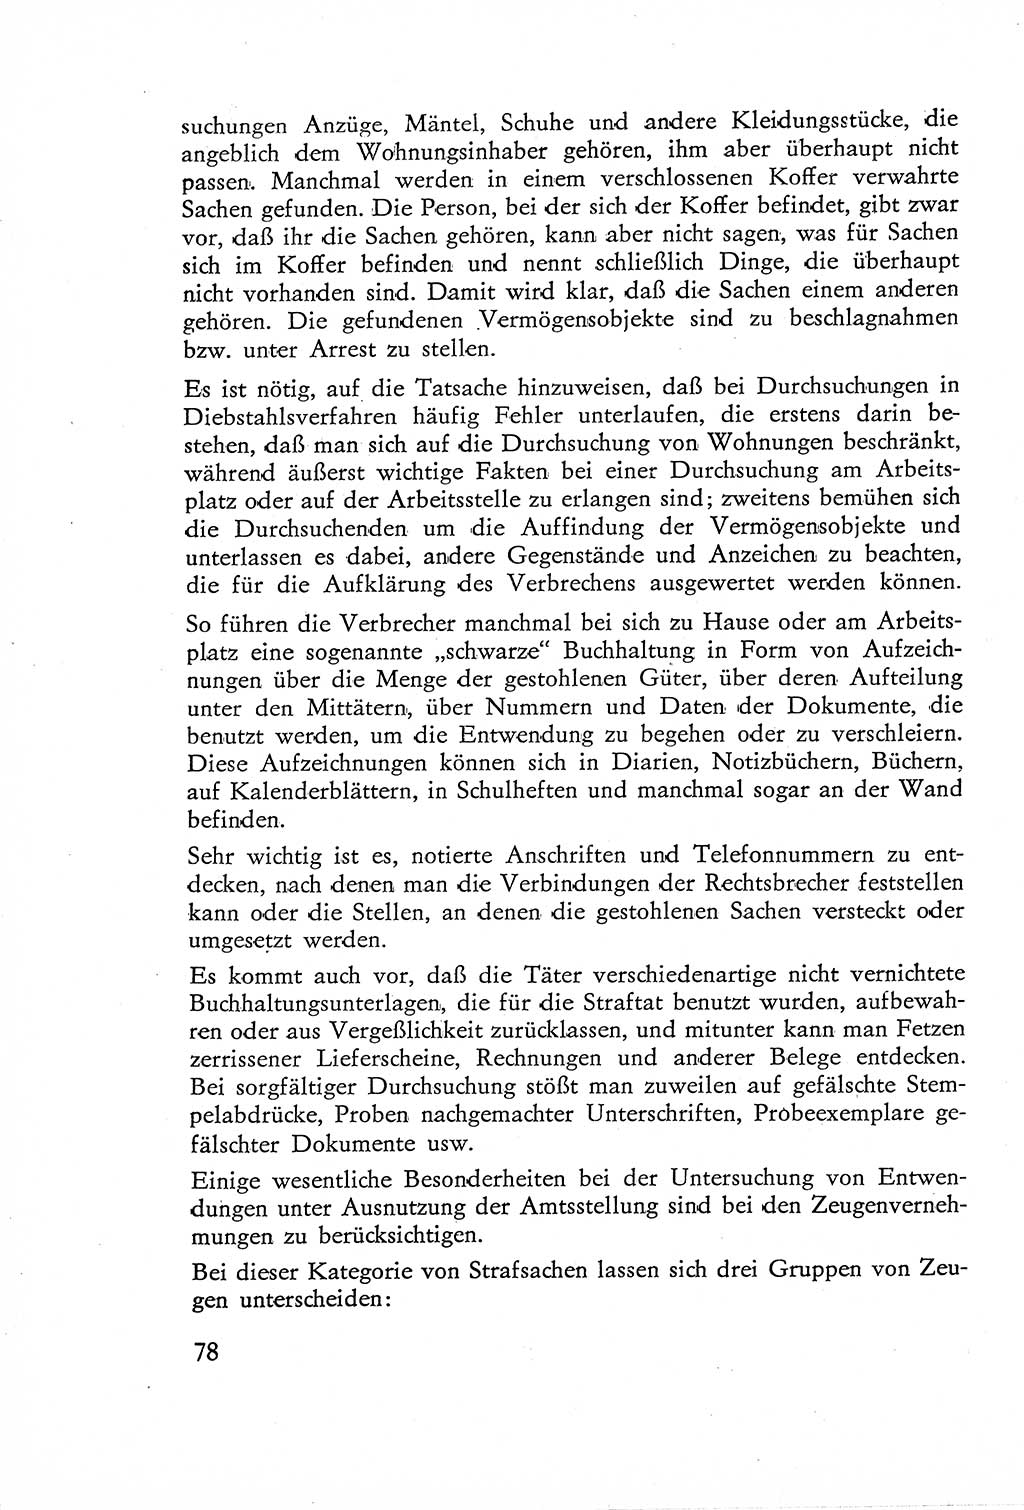 Die Untersuchung einzelner Verbrechensarten [Deutsche Demokratische Republik (DDR)] 1960, Seite 78 (Unters. Verbr.-Art. DDR 1960, S. 78)